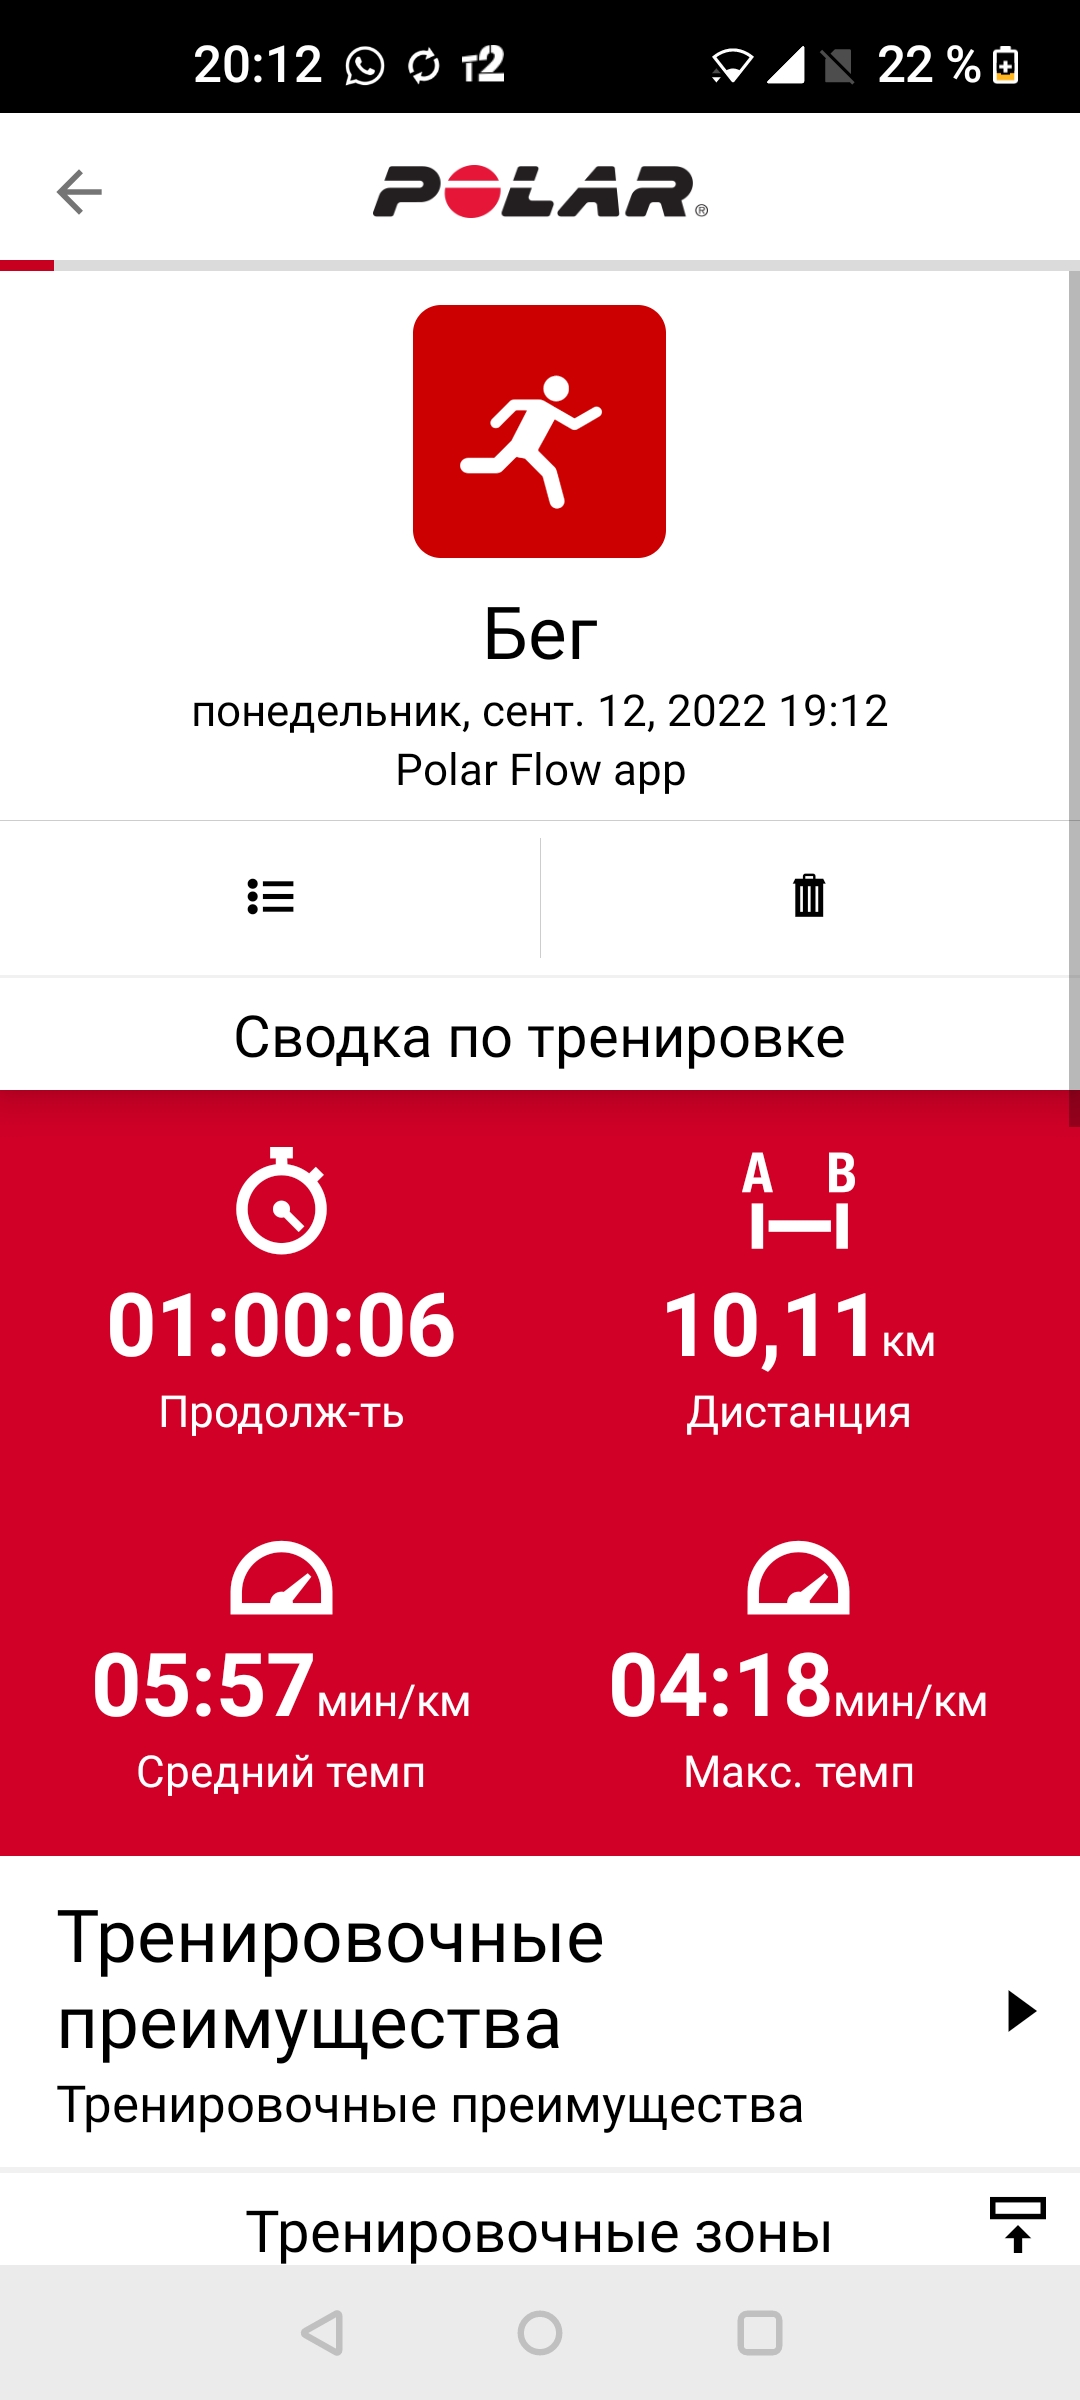  Загрузка от 12.09.2022 00:00:00 Чистяков Игорь 